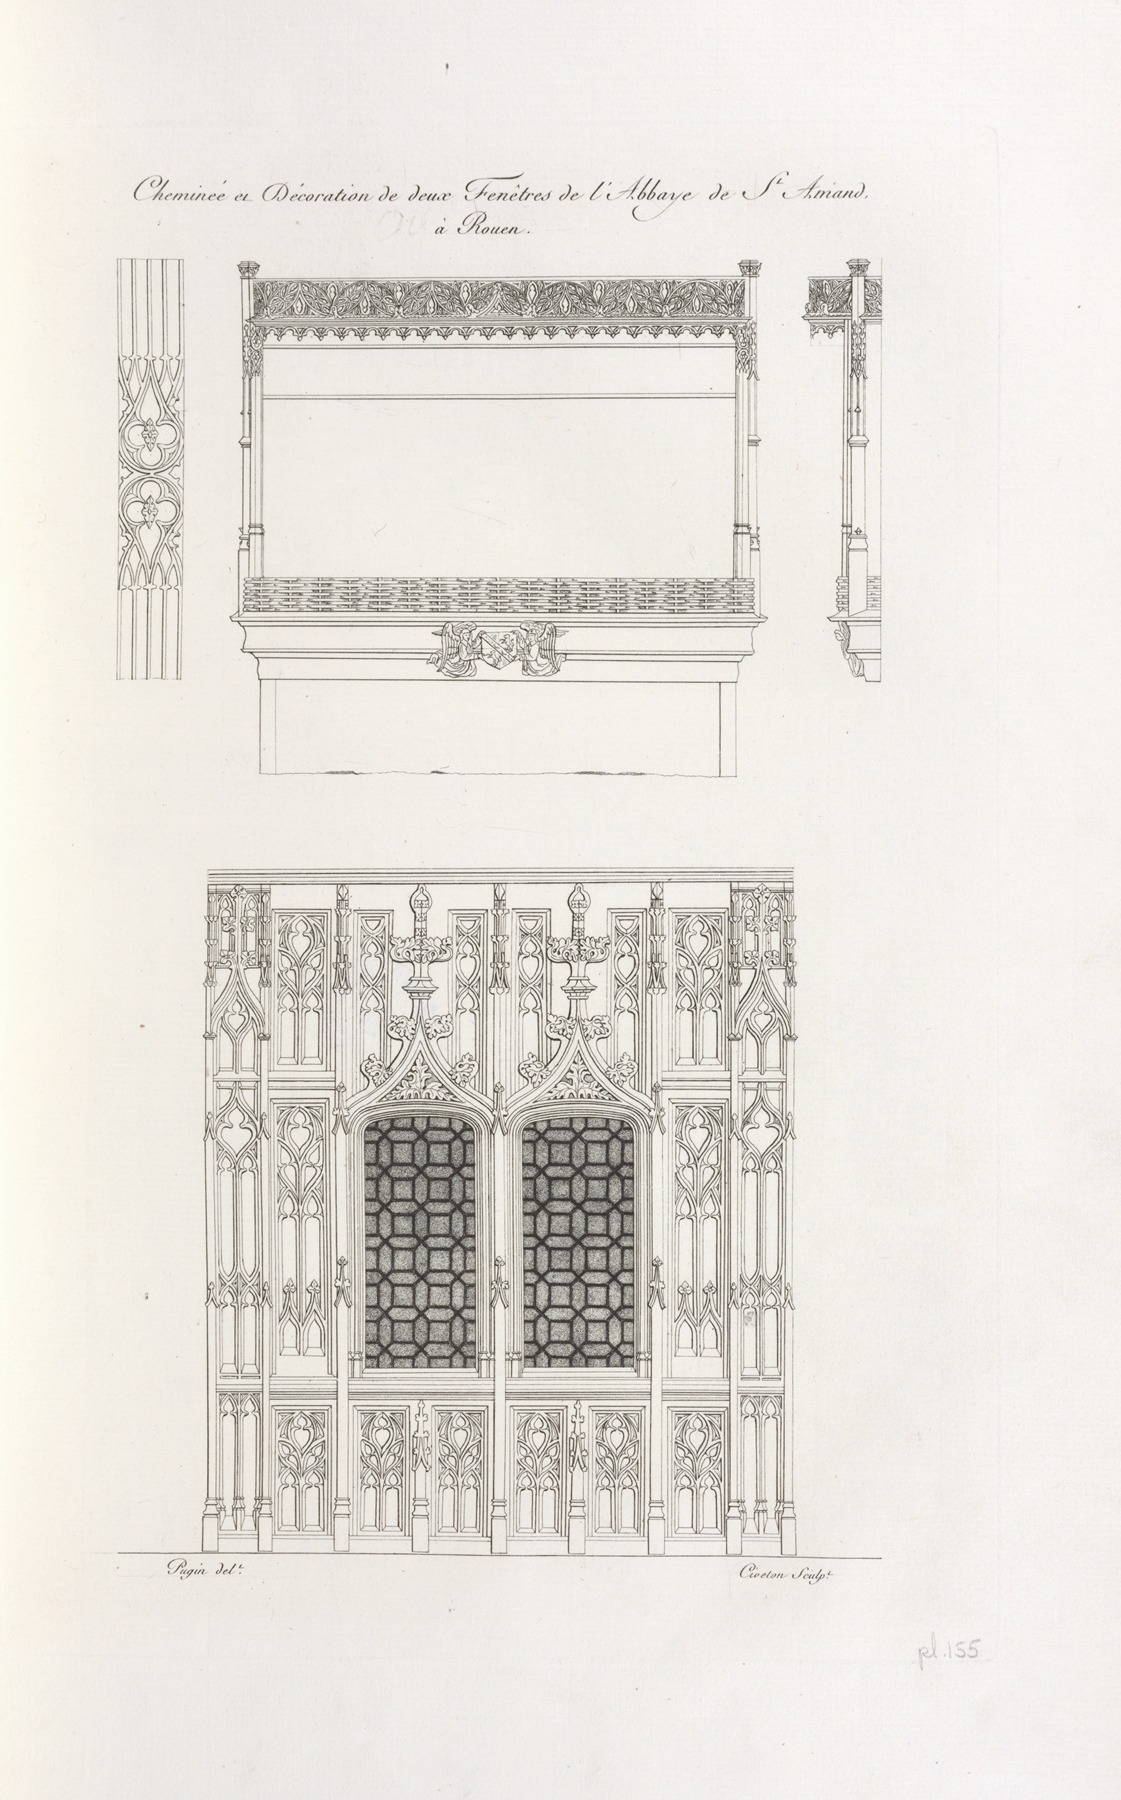 Nicolas Xavier Willemin - Cheminée et décoration de deux fenêtres de l’abbaye de St. Amand, à Rouen.